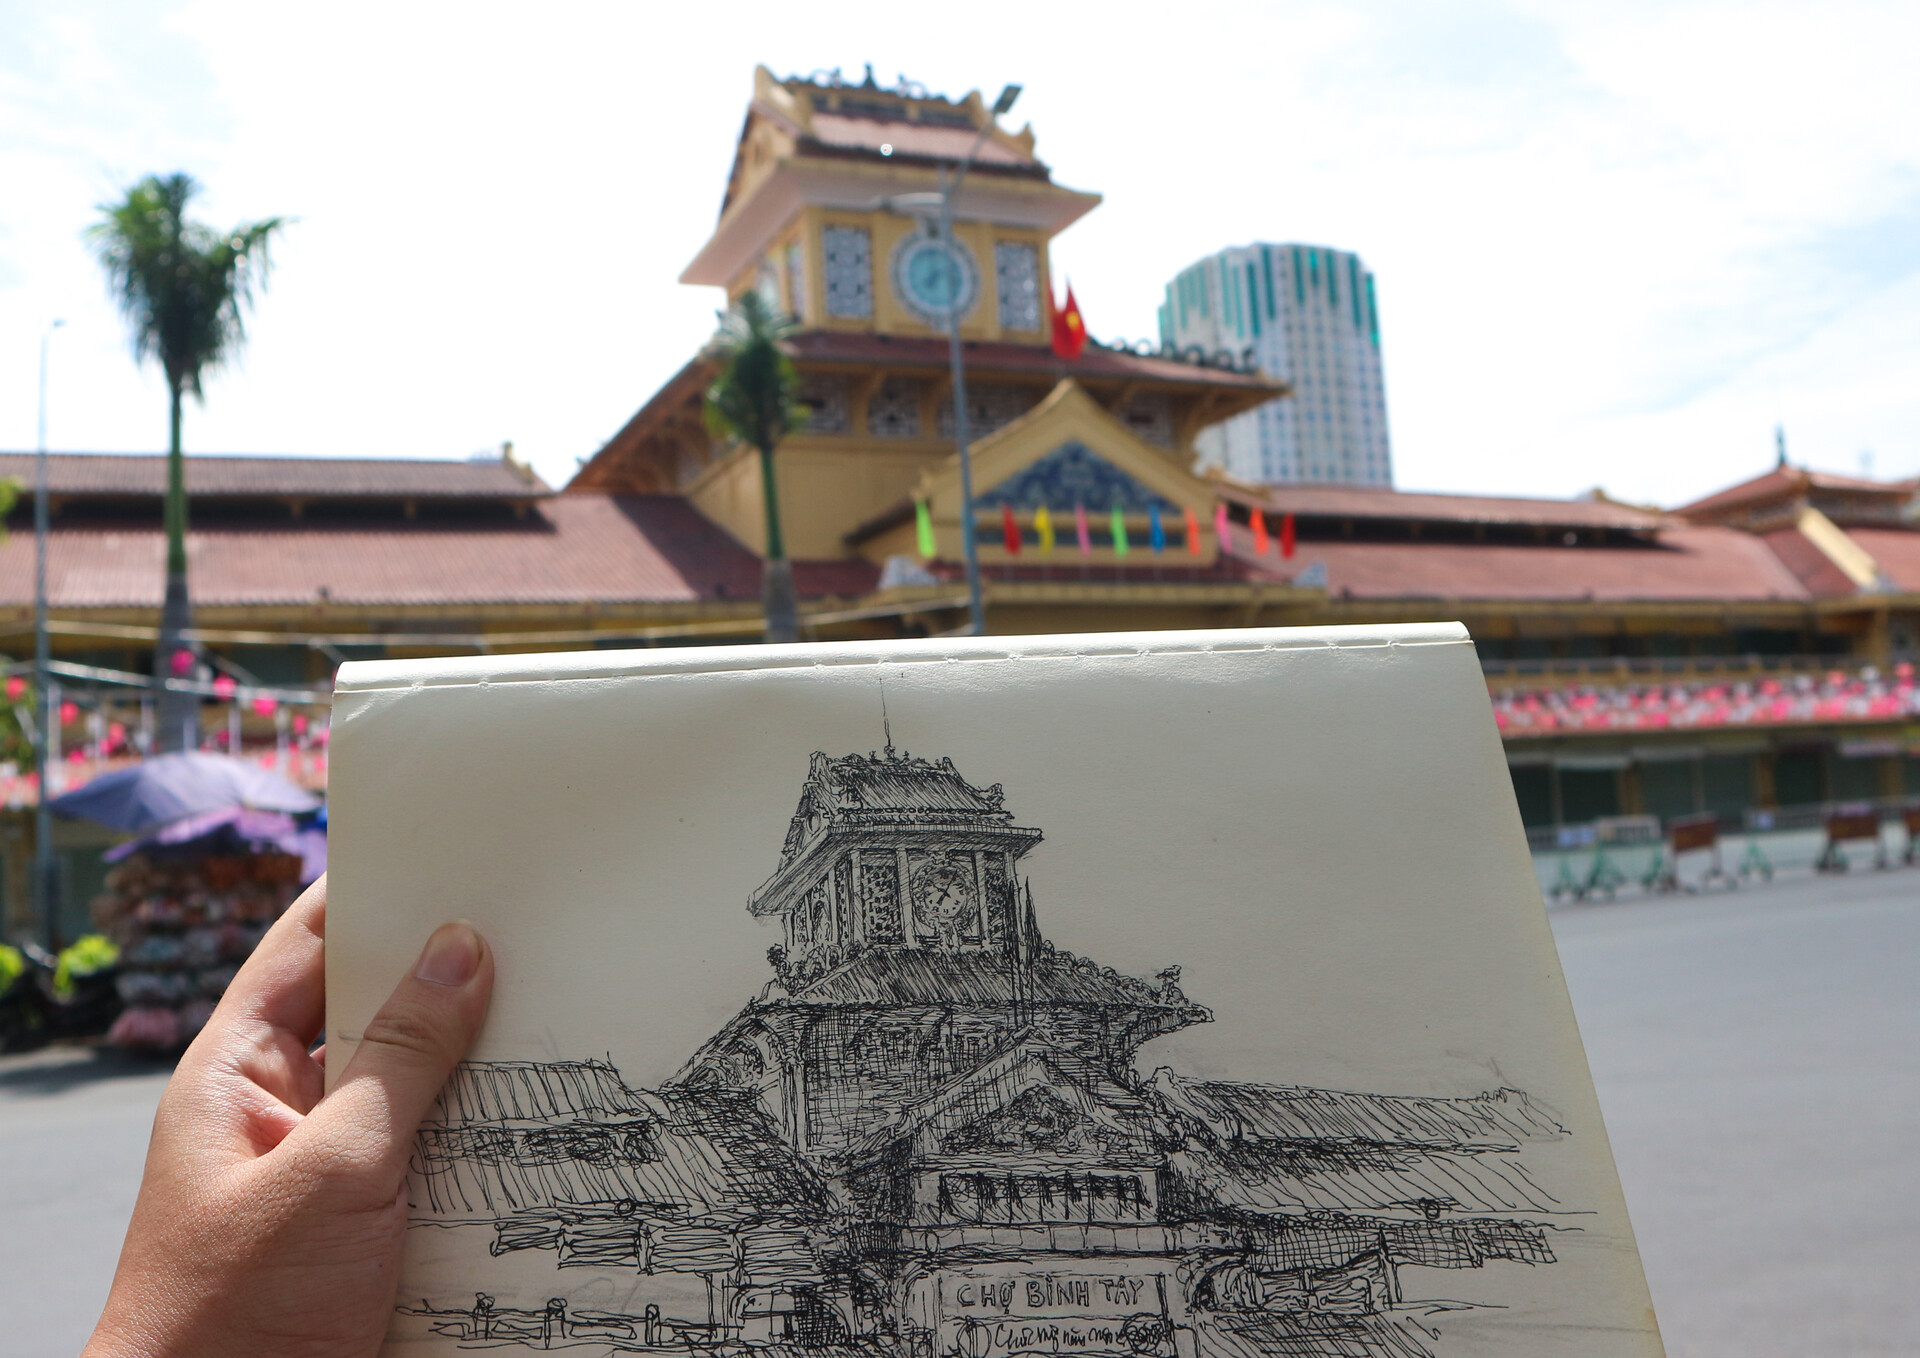 ArtStation - Vẽ tranh phong cảnh ký họa chợ Bình Tây , Việt Nam by Quan Art  Drawing